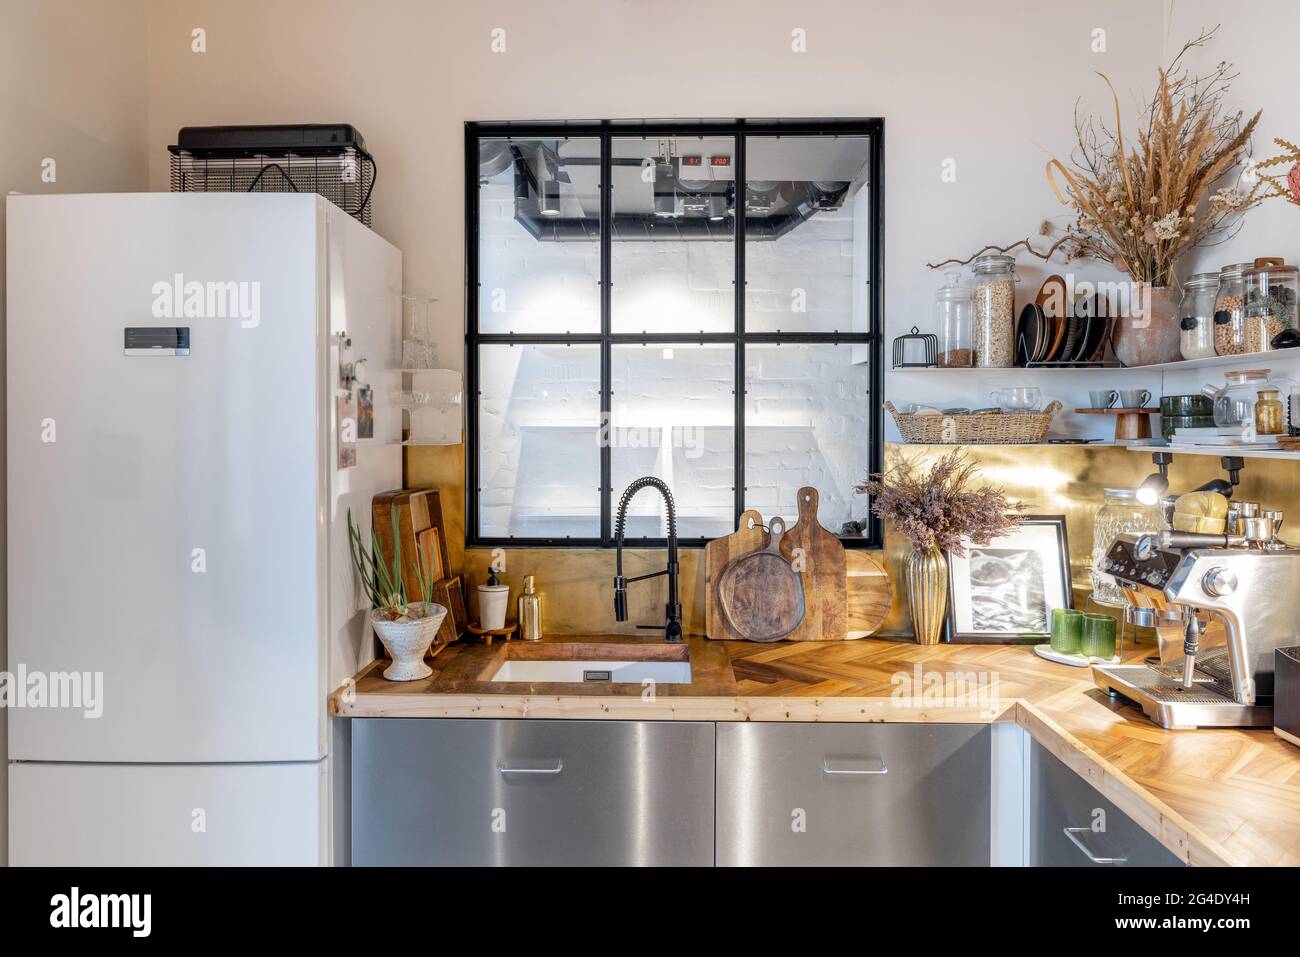 Cucina interna con finestra loft in moderno stile industriale Foto stock -  Alamy